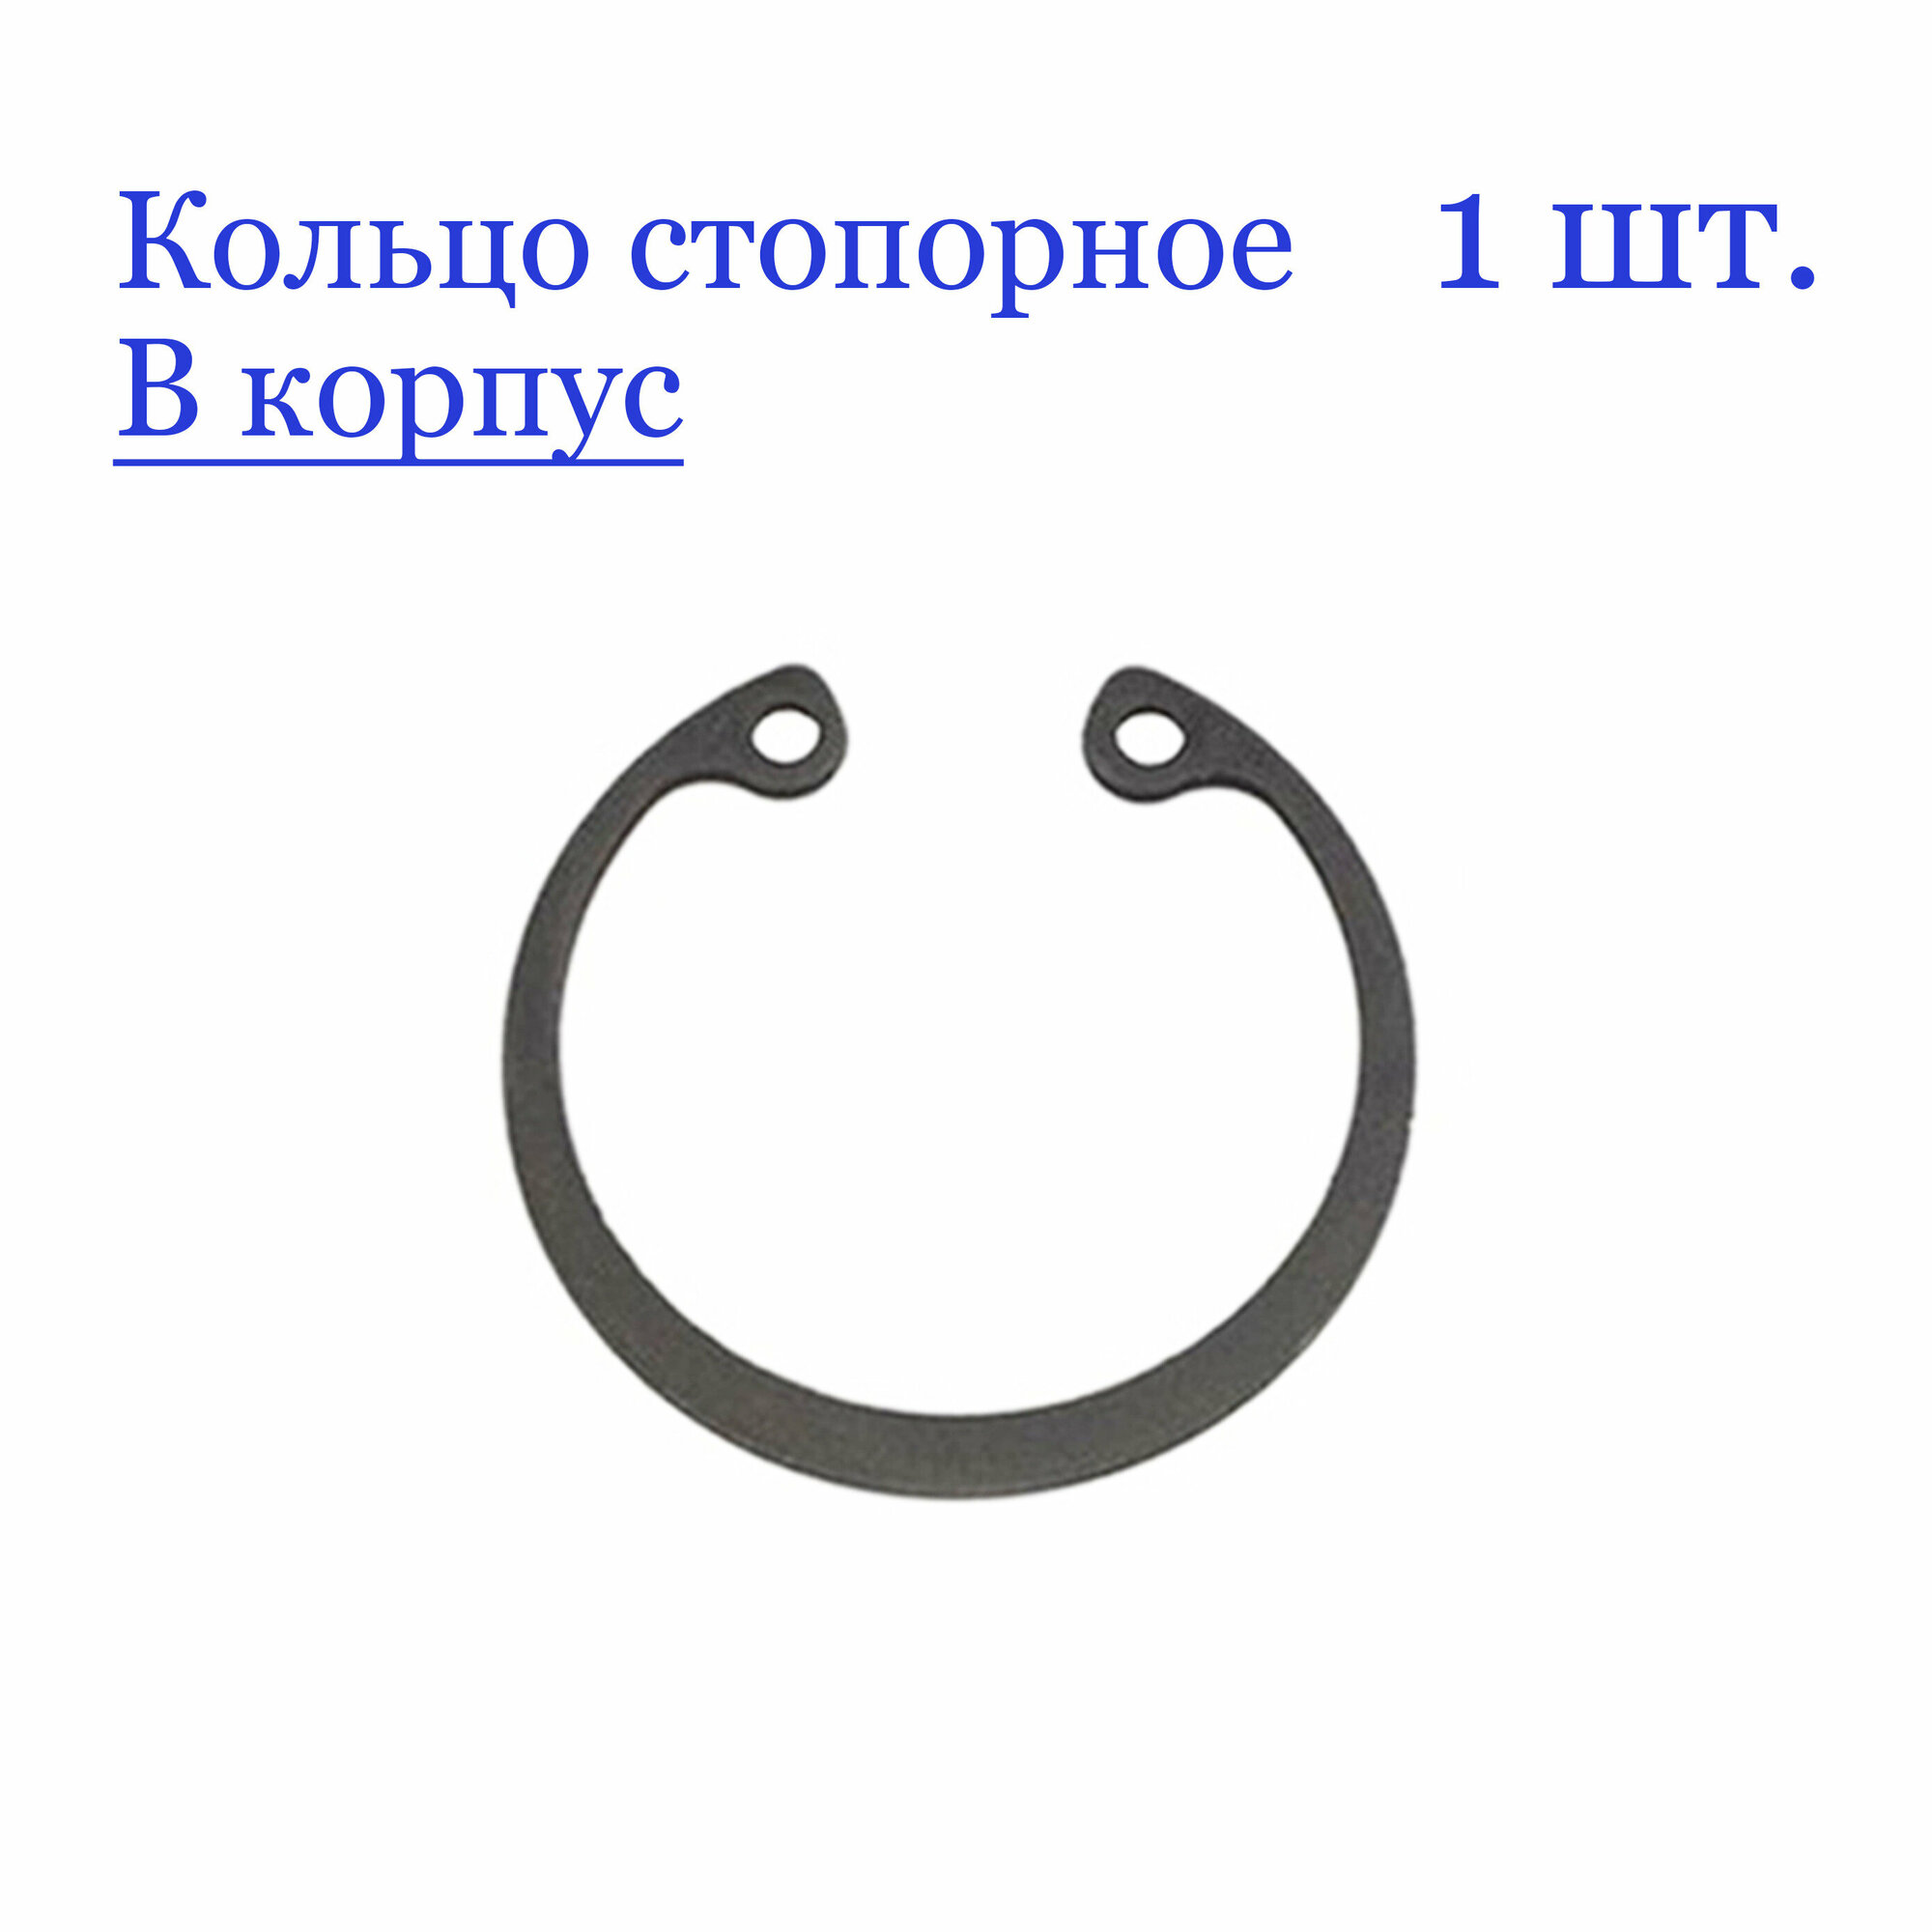 Кольцо стопорное, внутреннее, в корпус 12 мм. х 1 мм, ГОСТ 13943-86 / DIN 472 (1 шт.)